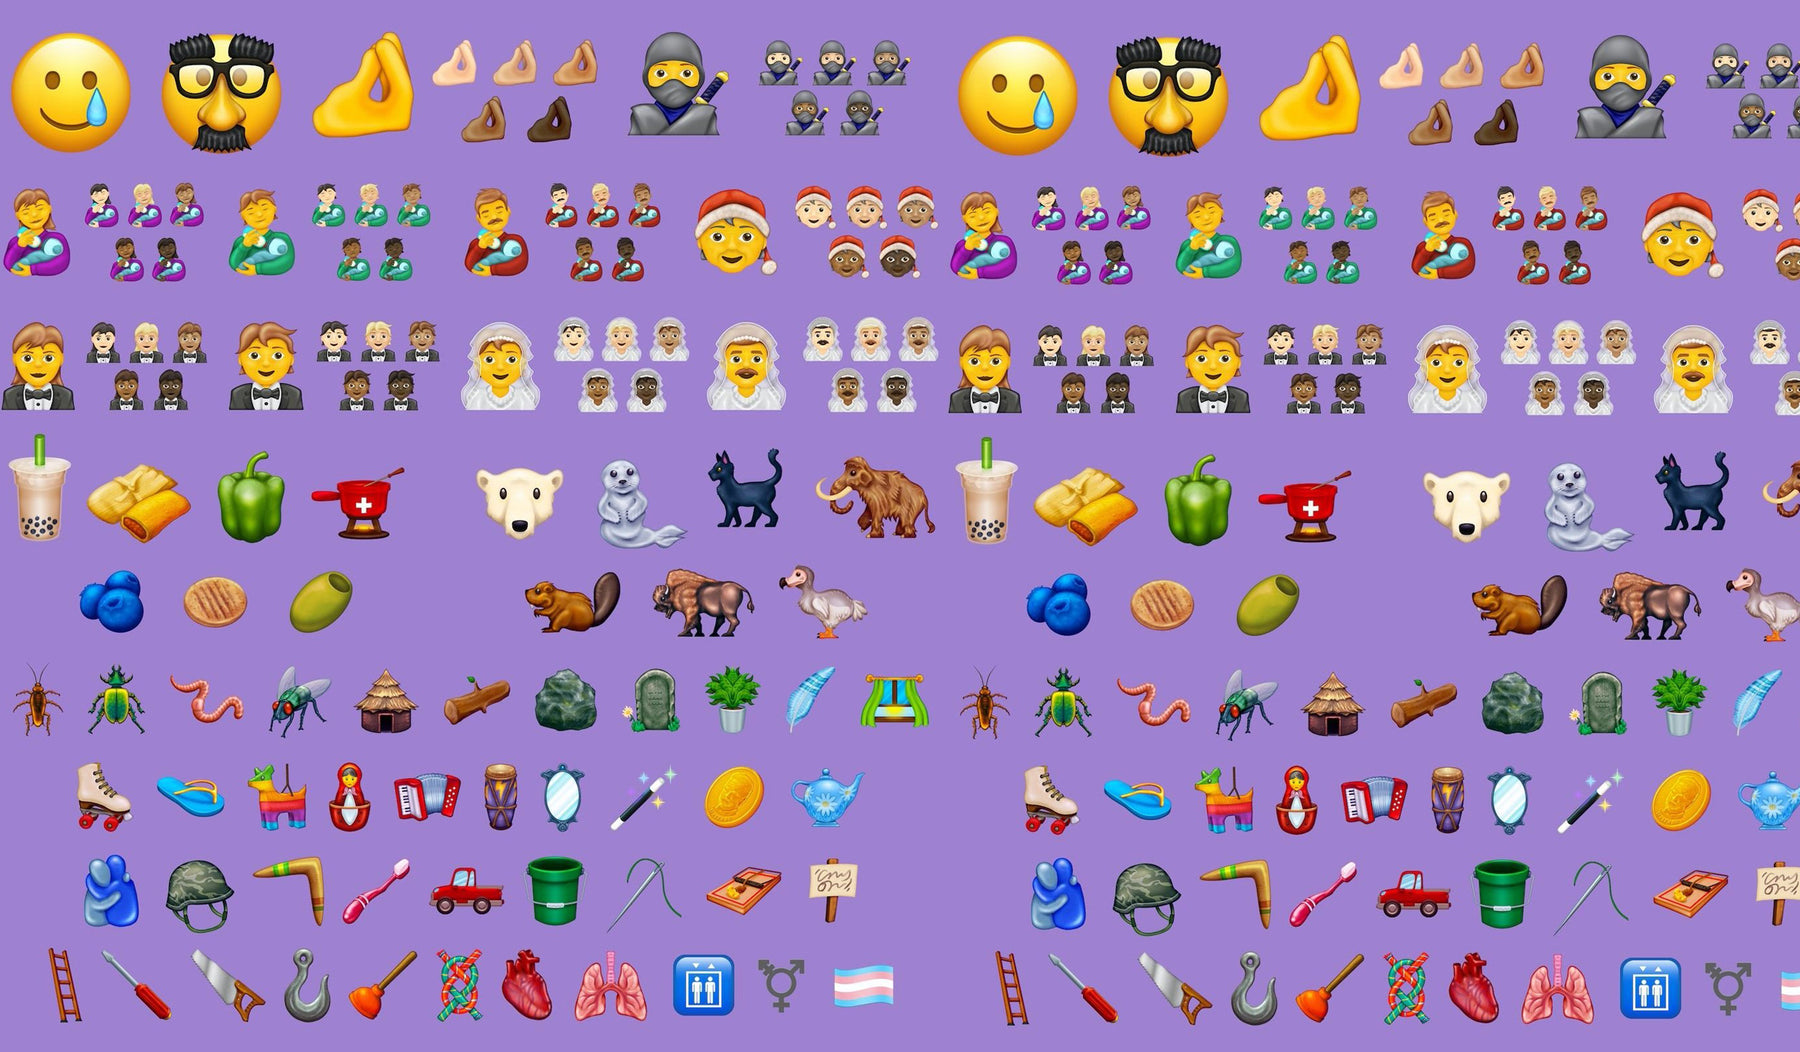 display of new emojis 2020 